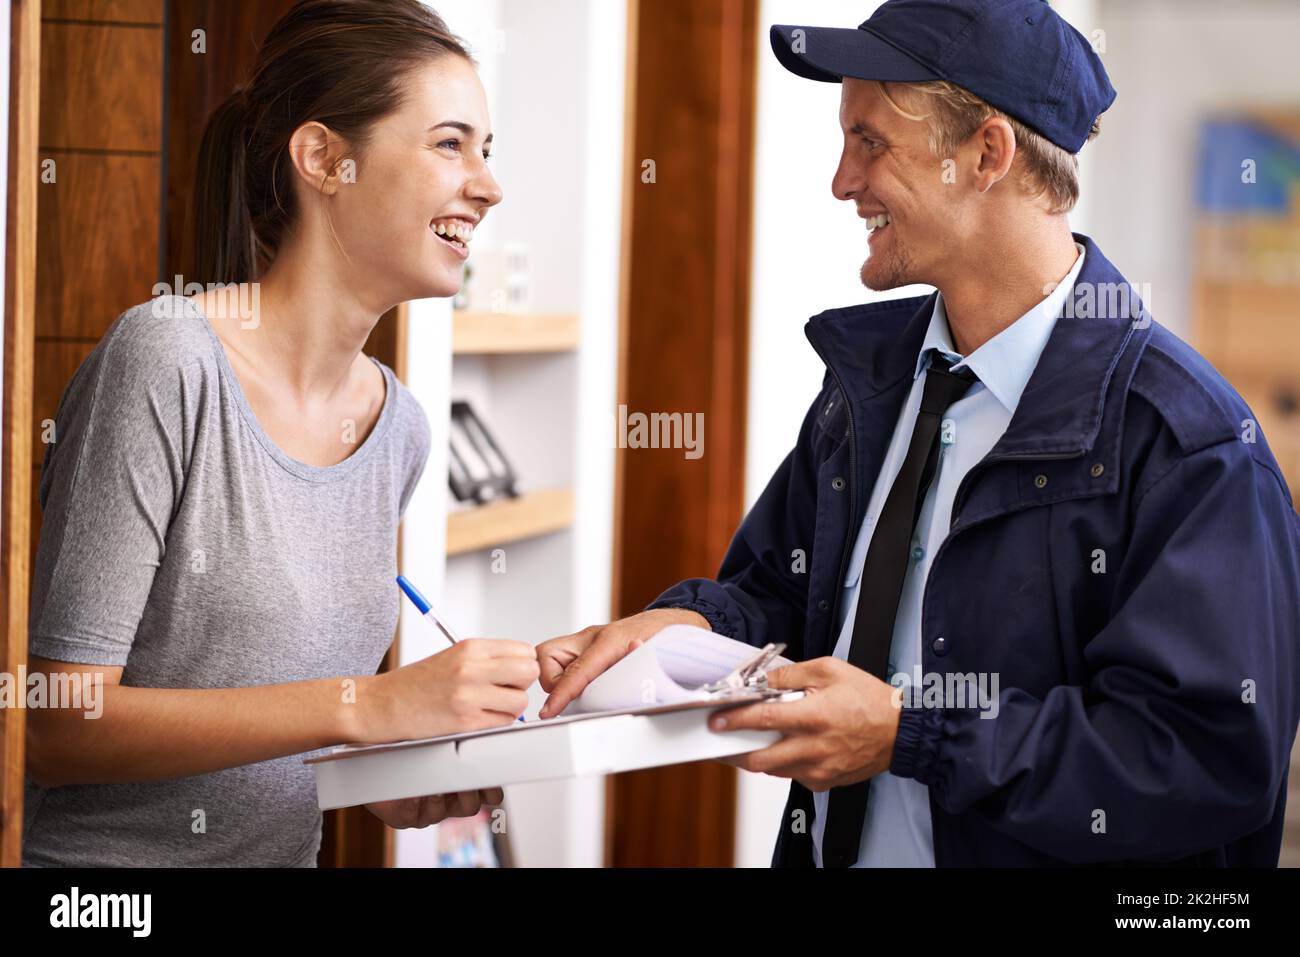 Es kommt immer pünktlich an. Ein Kurier, der eine Lieferung an einen lächelnden Kunden macht. Stockfoto